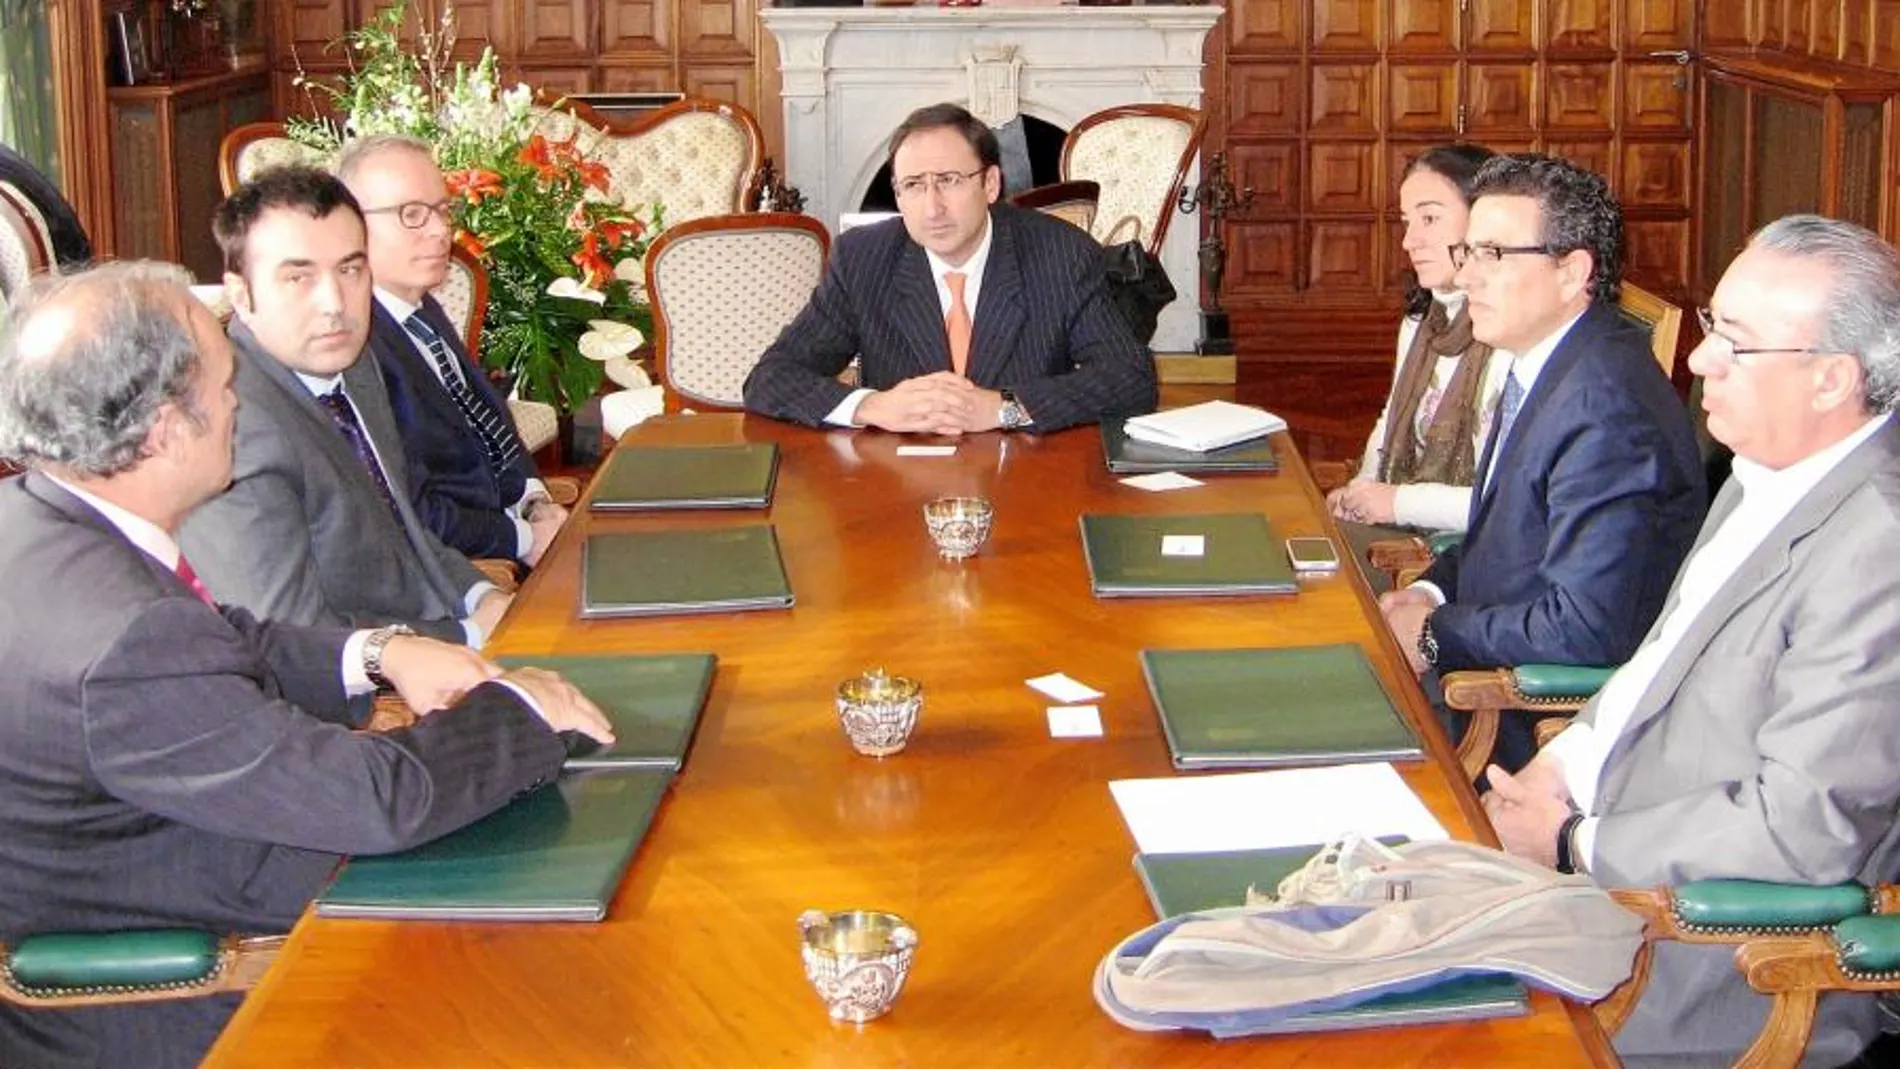 El alcalde de Palencia, Alfonso Polanco, se entrevista con los responsables de la multinacional Olam en España